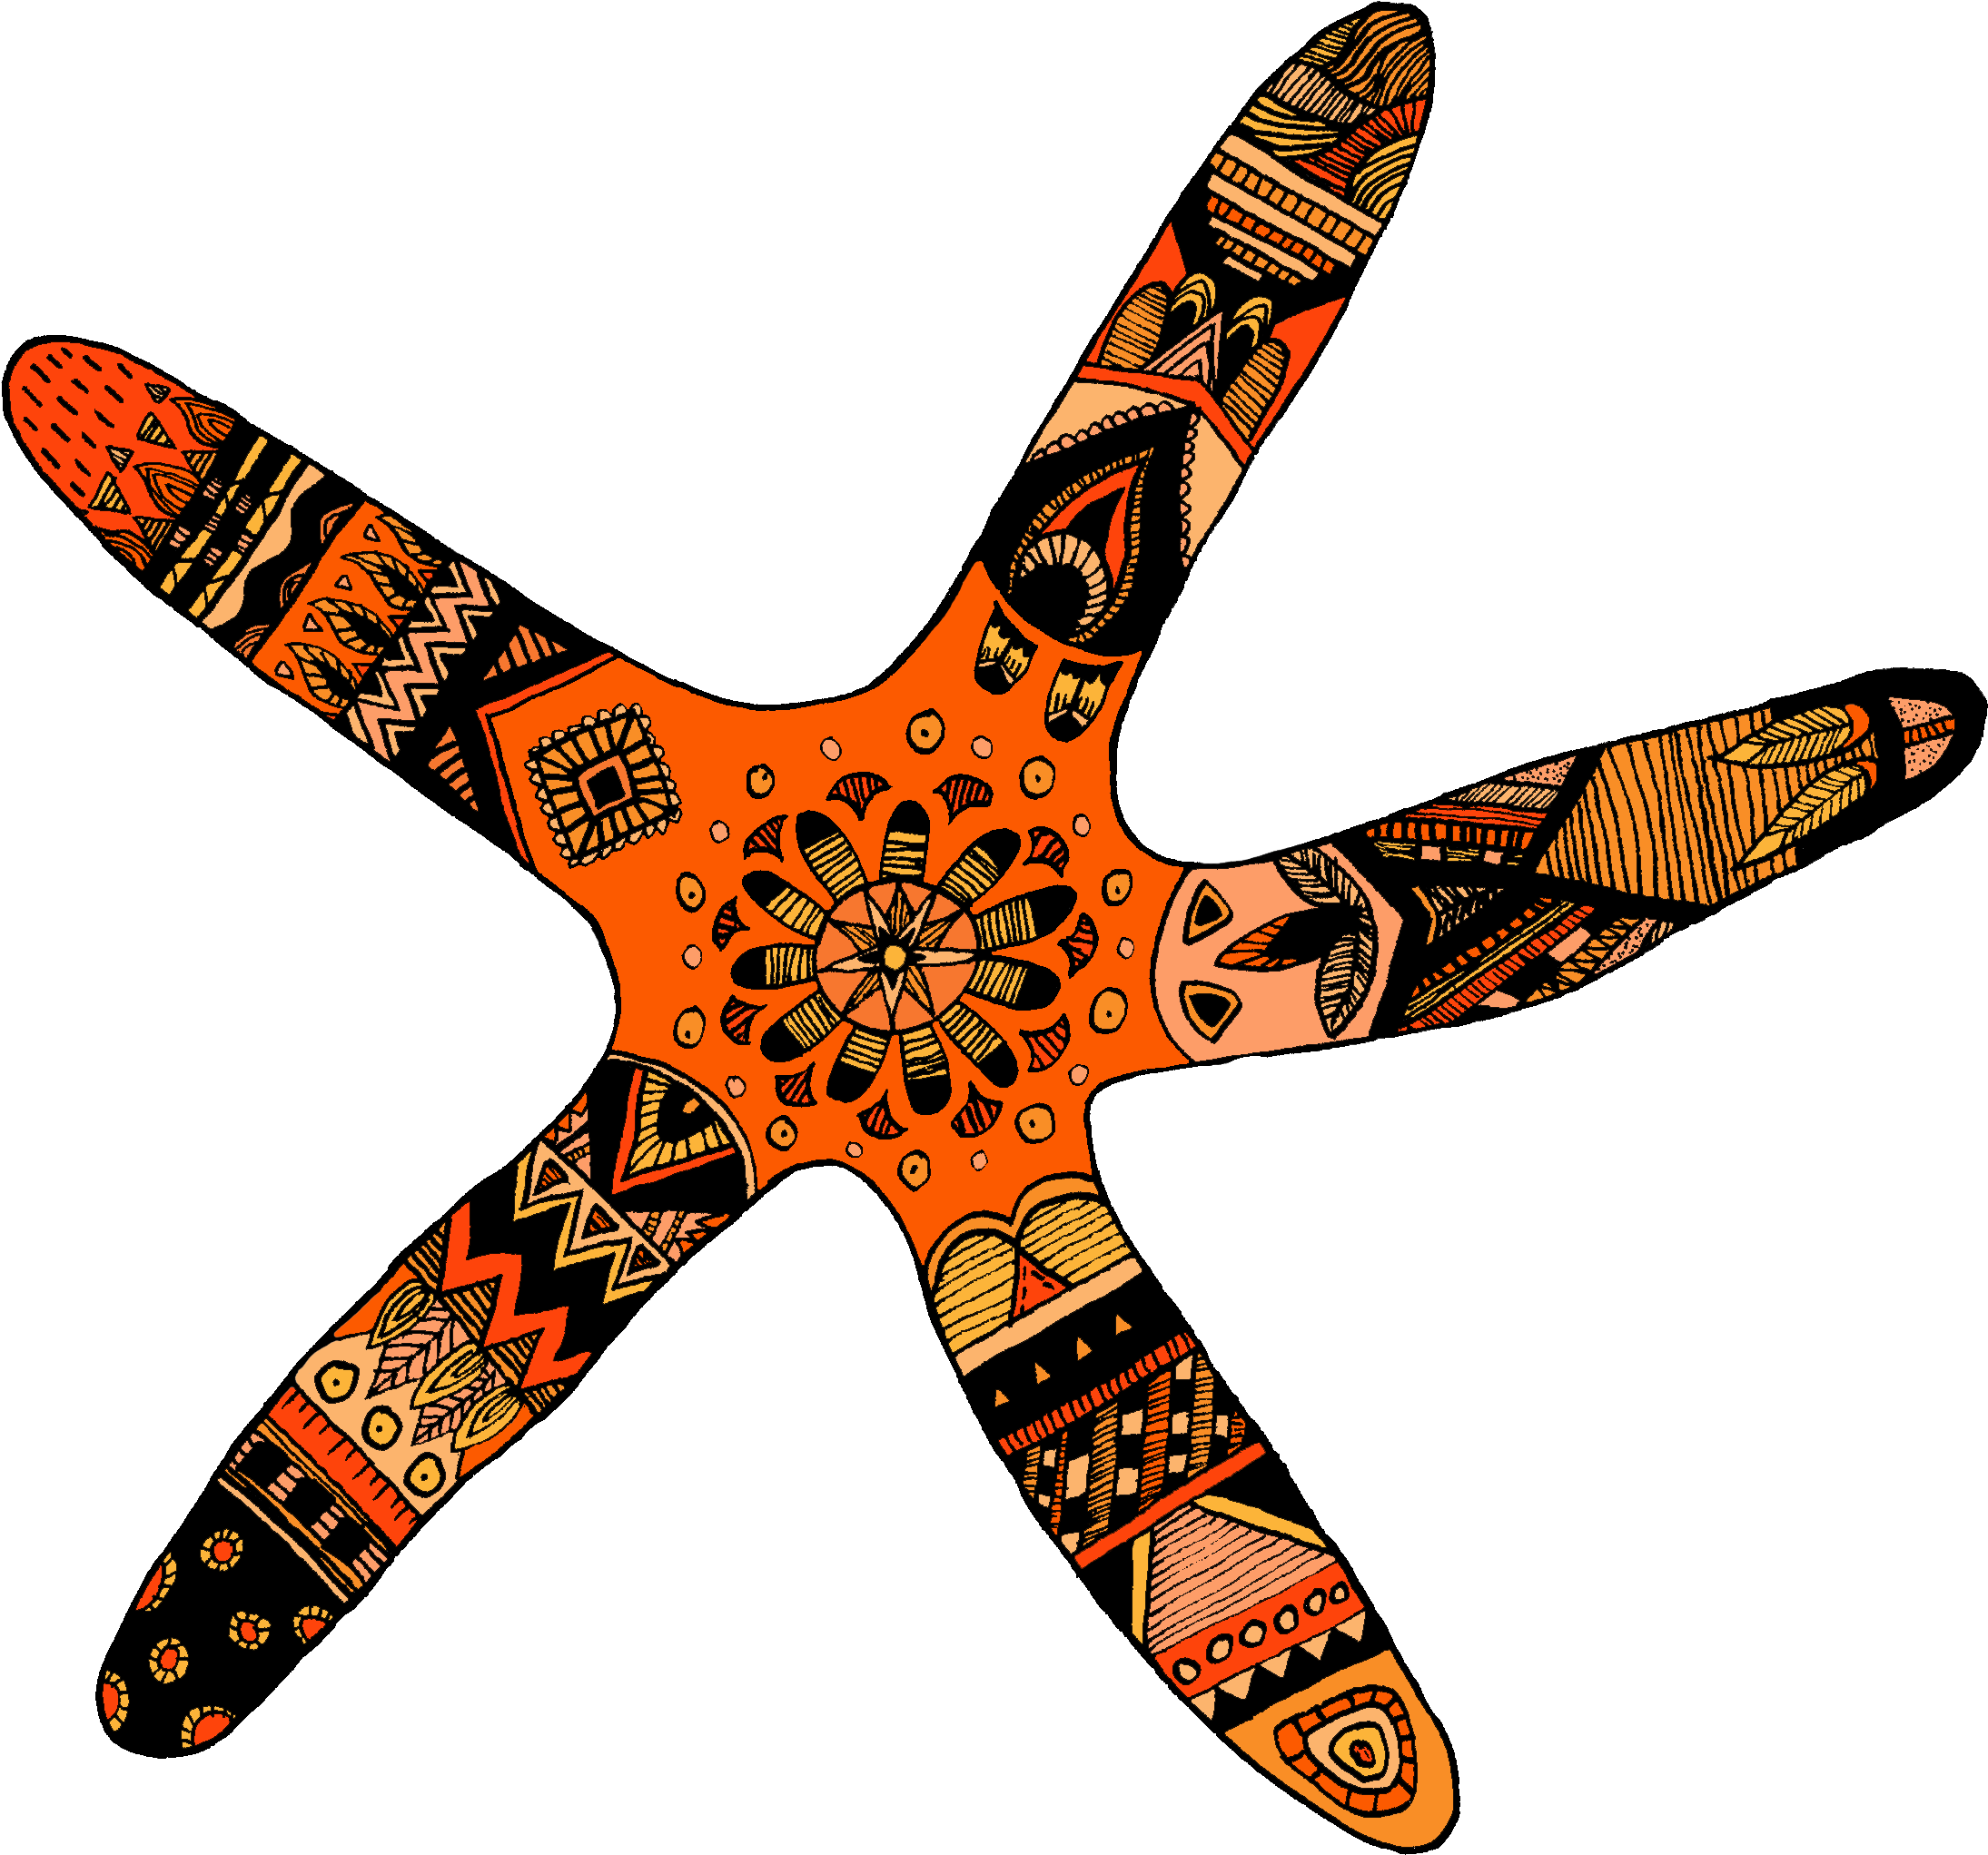 My Starfish Design - Starfish (2362x2202)